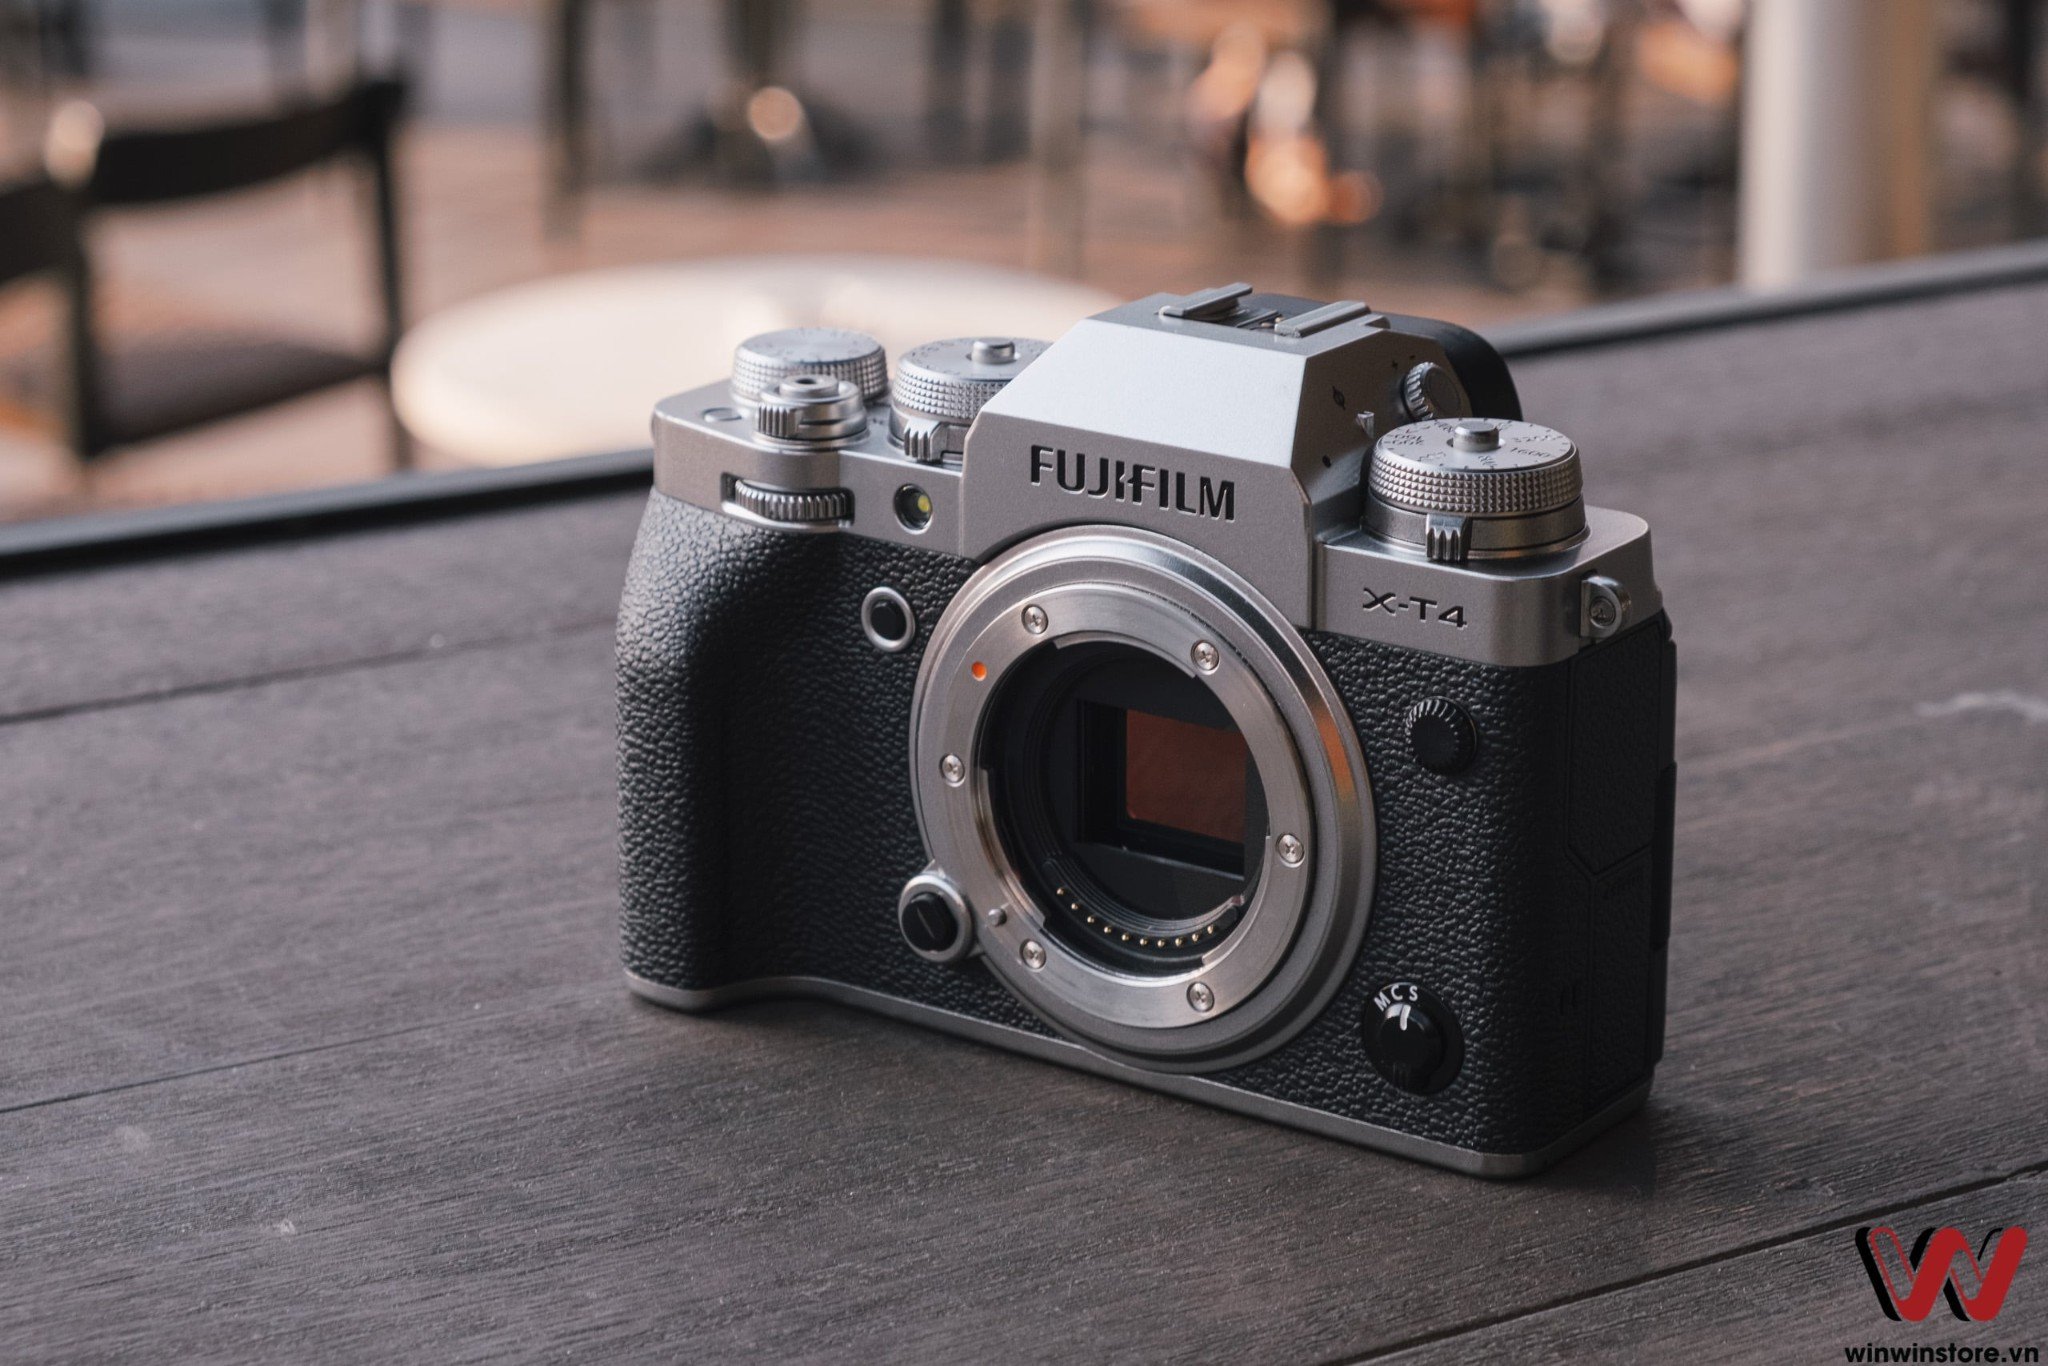 Trò chuyện cùng đại diện Fujifilm: thông tin về Fujifilm X-H2, Fujifilm X80, dòng máy ảnh Compact và nhiều thứ nữa